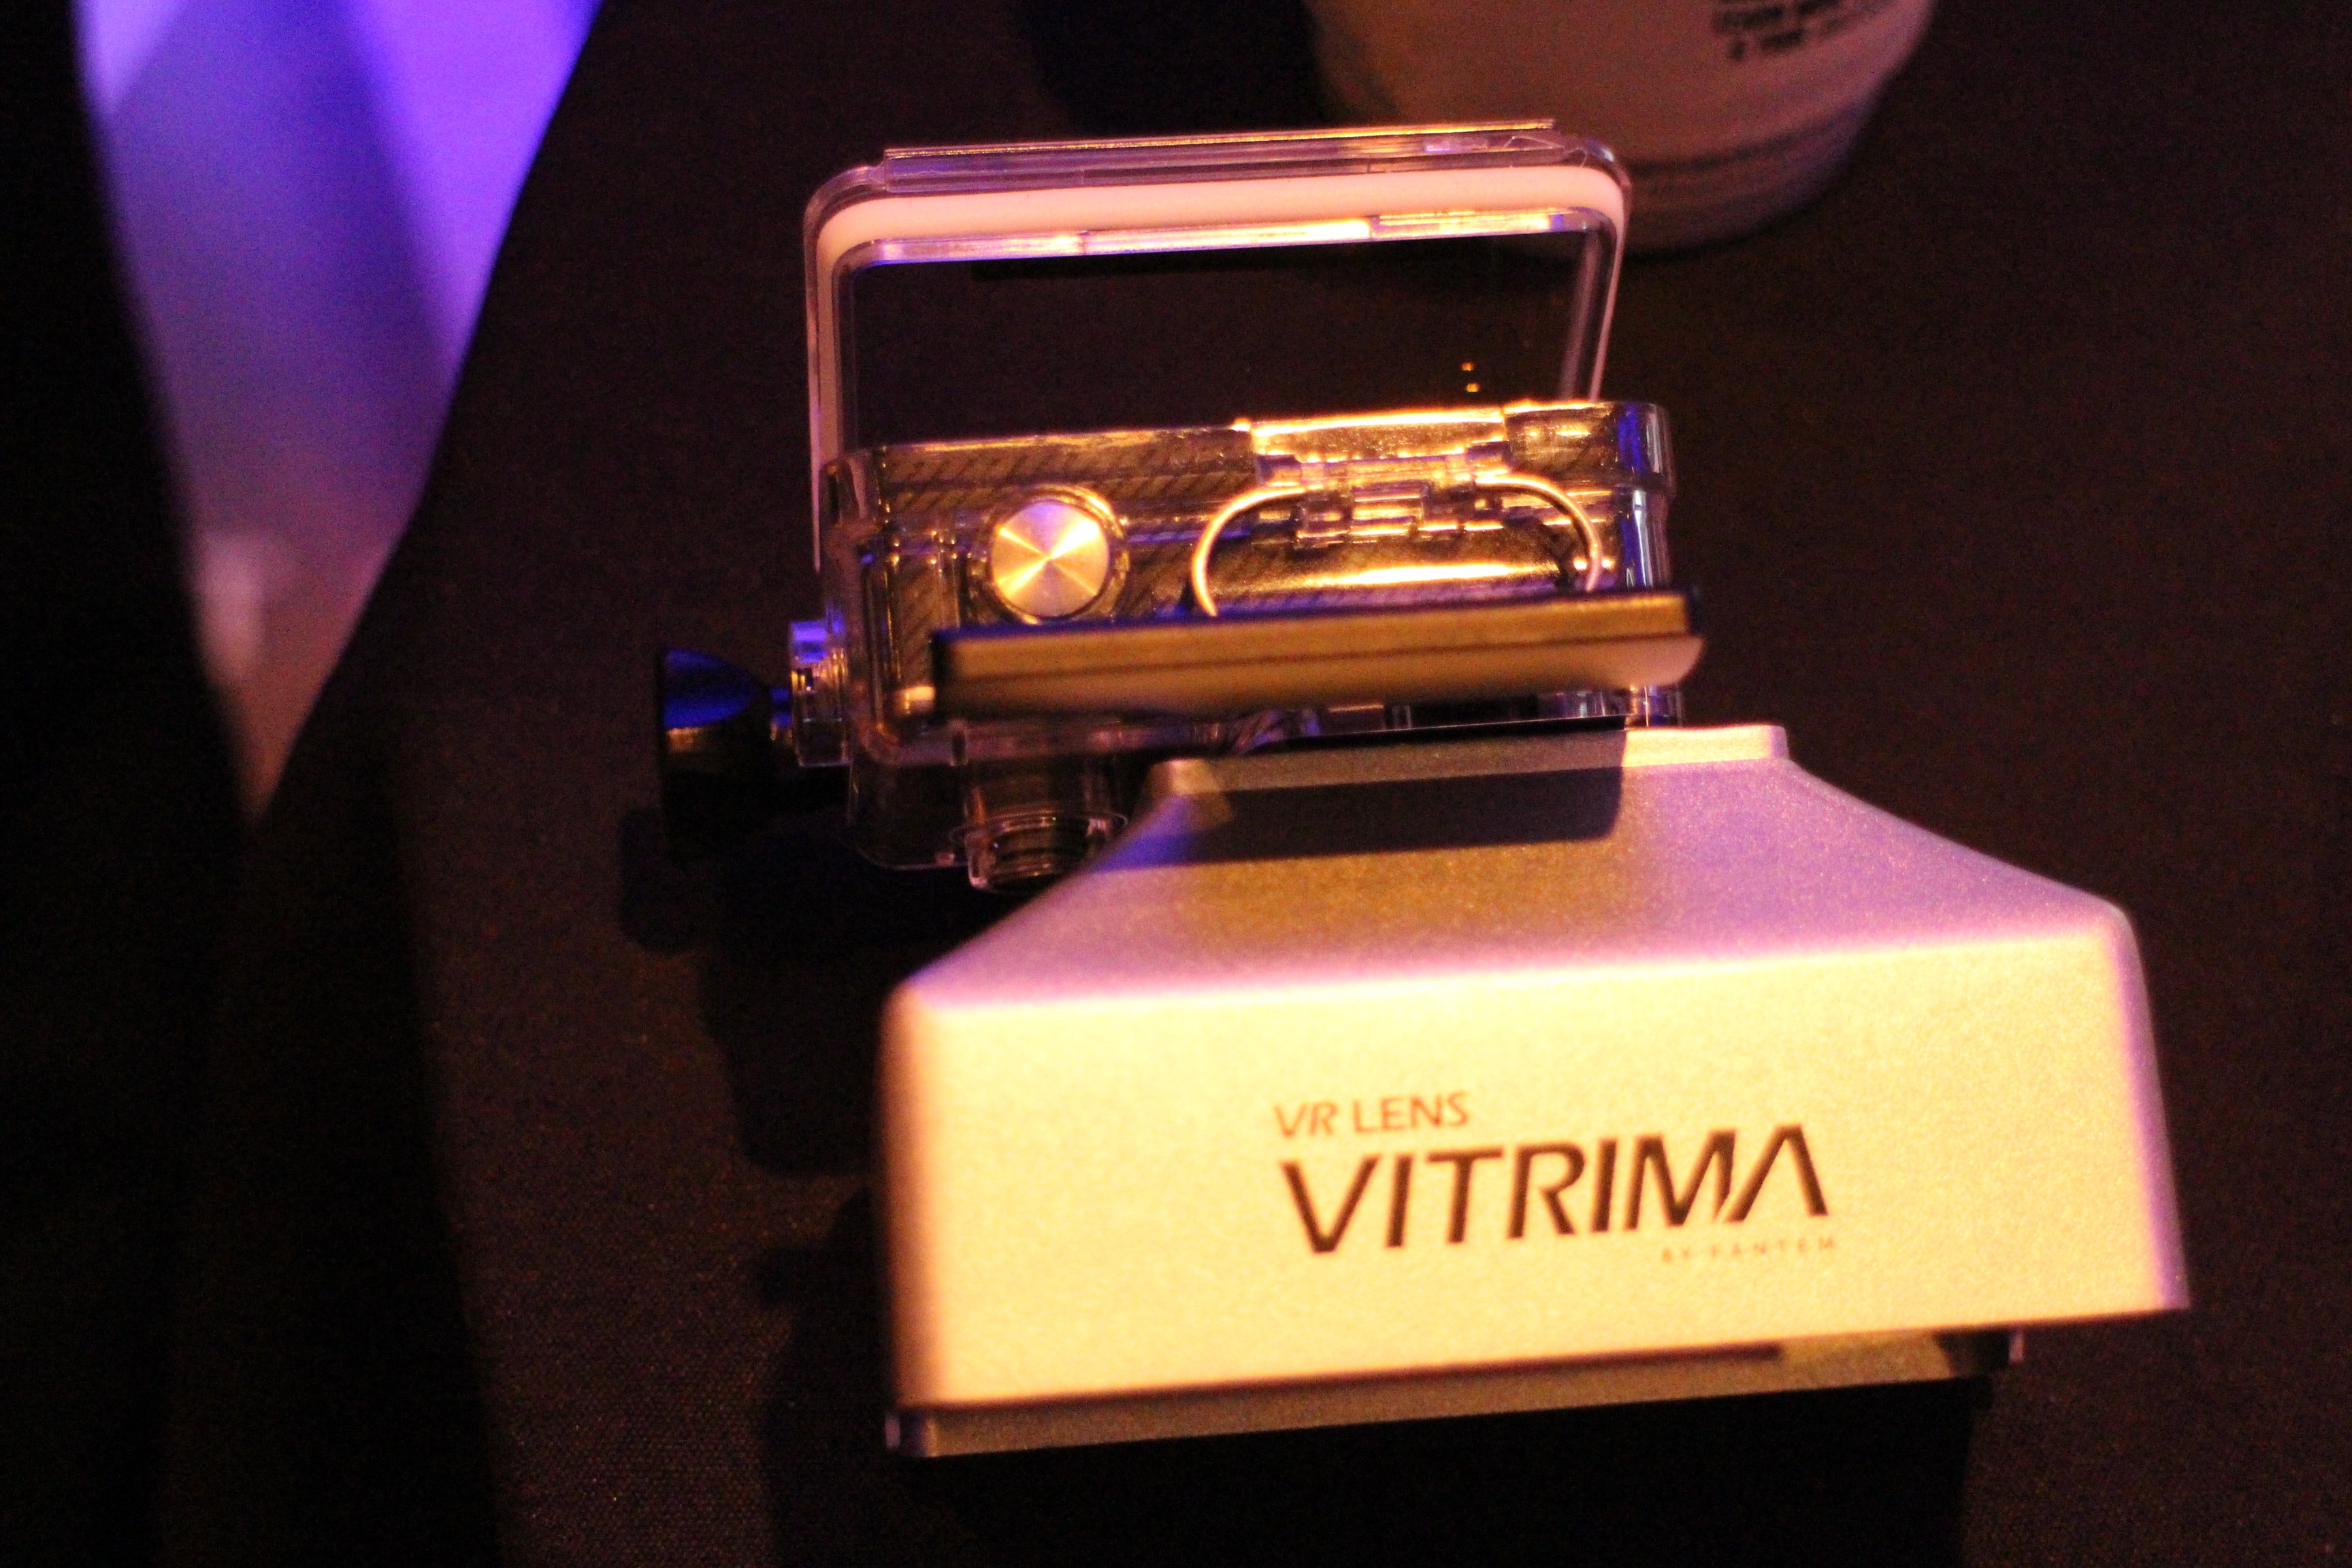 VITRIMAは、GoPro一台で擬似的にVR映像を撮影するデバイス